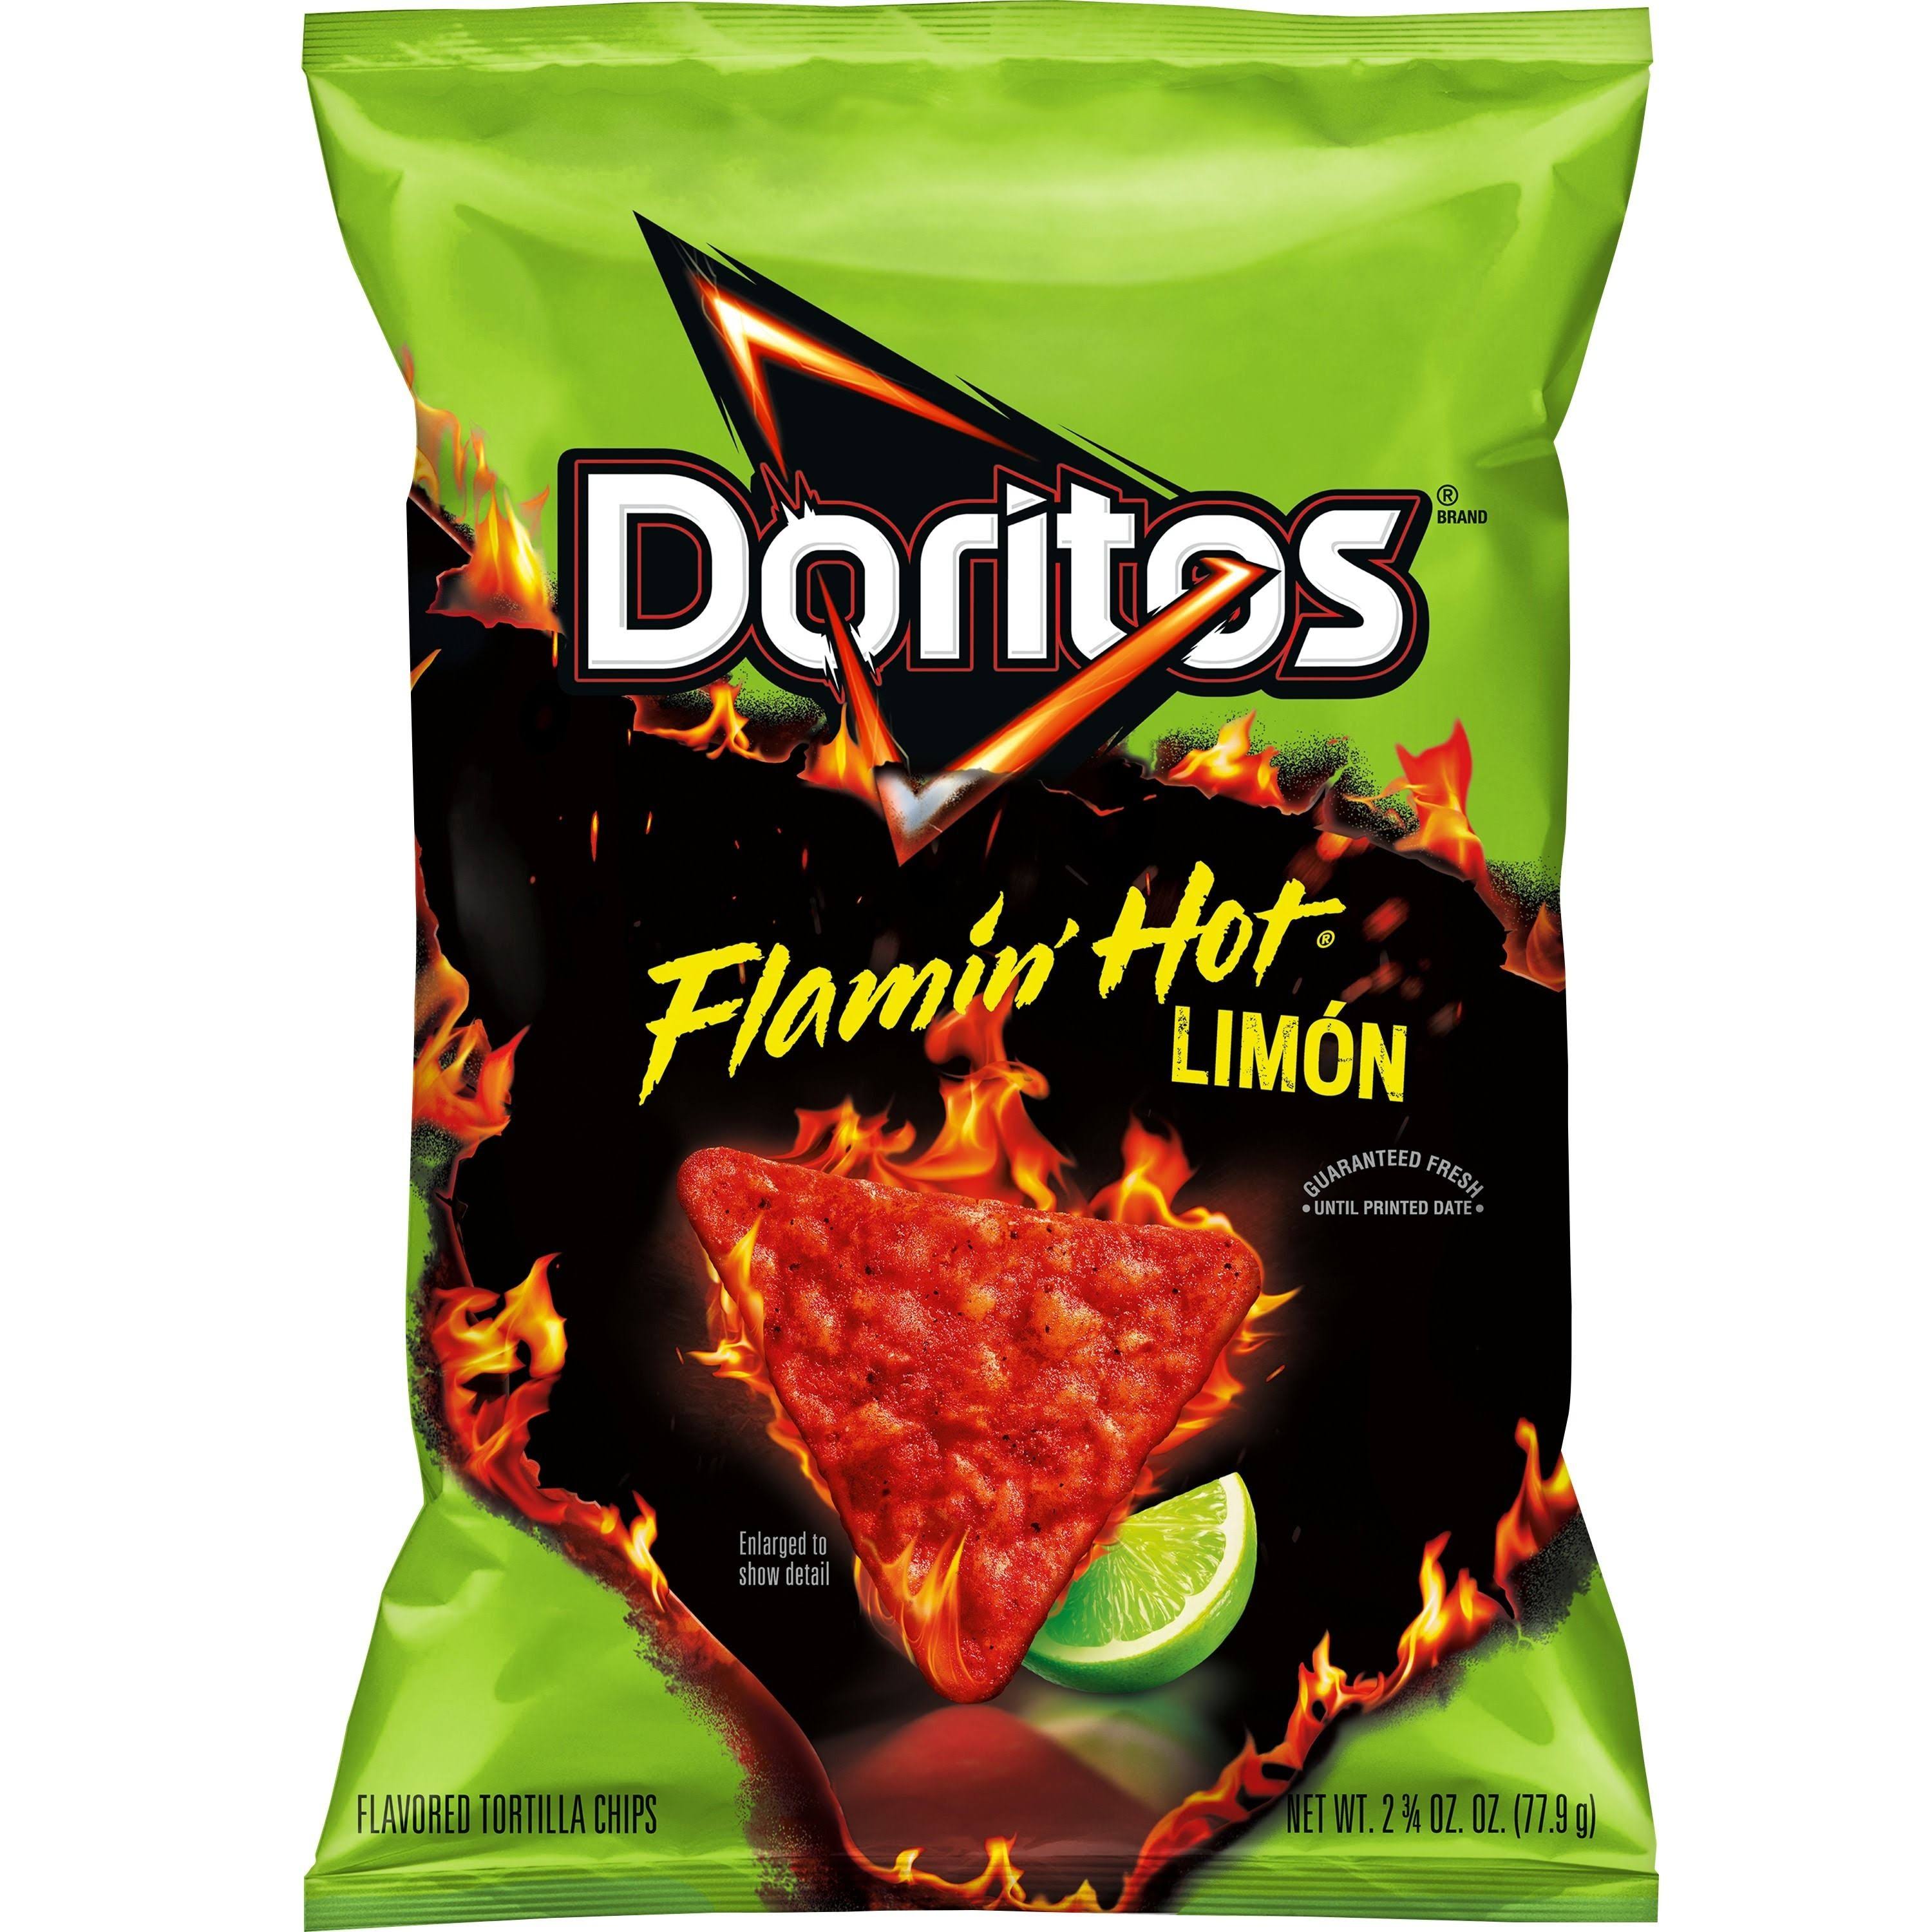 Doritos Tortilla Chips, Flamin' Hot Limon - 2.75 oz